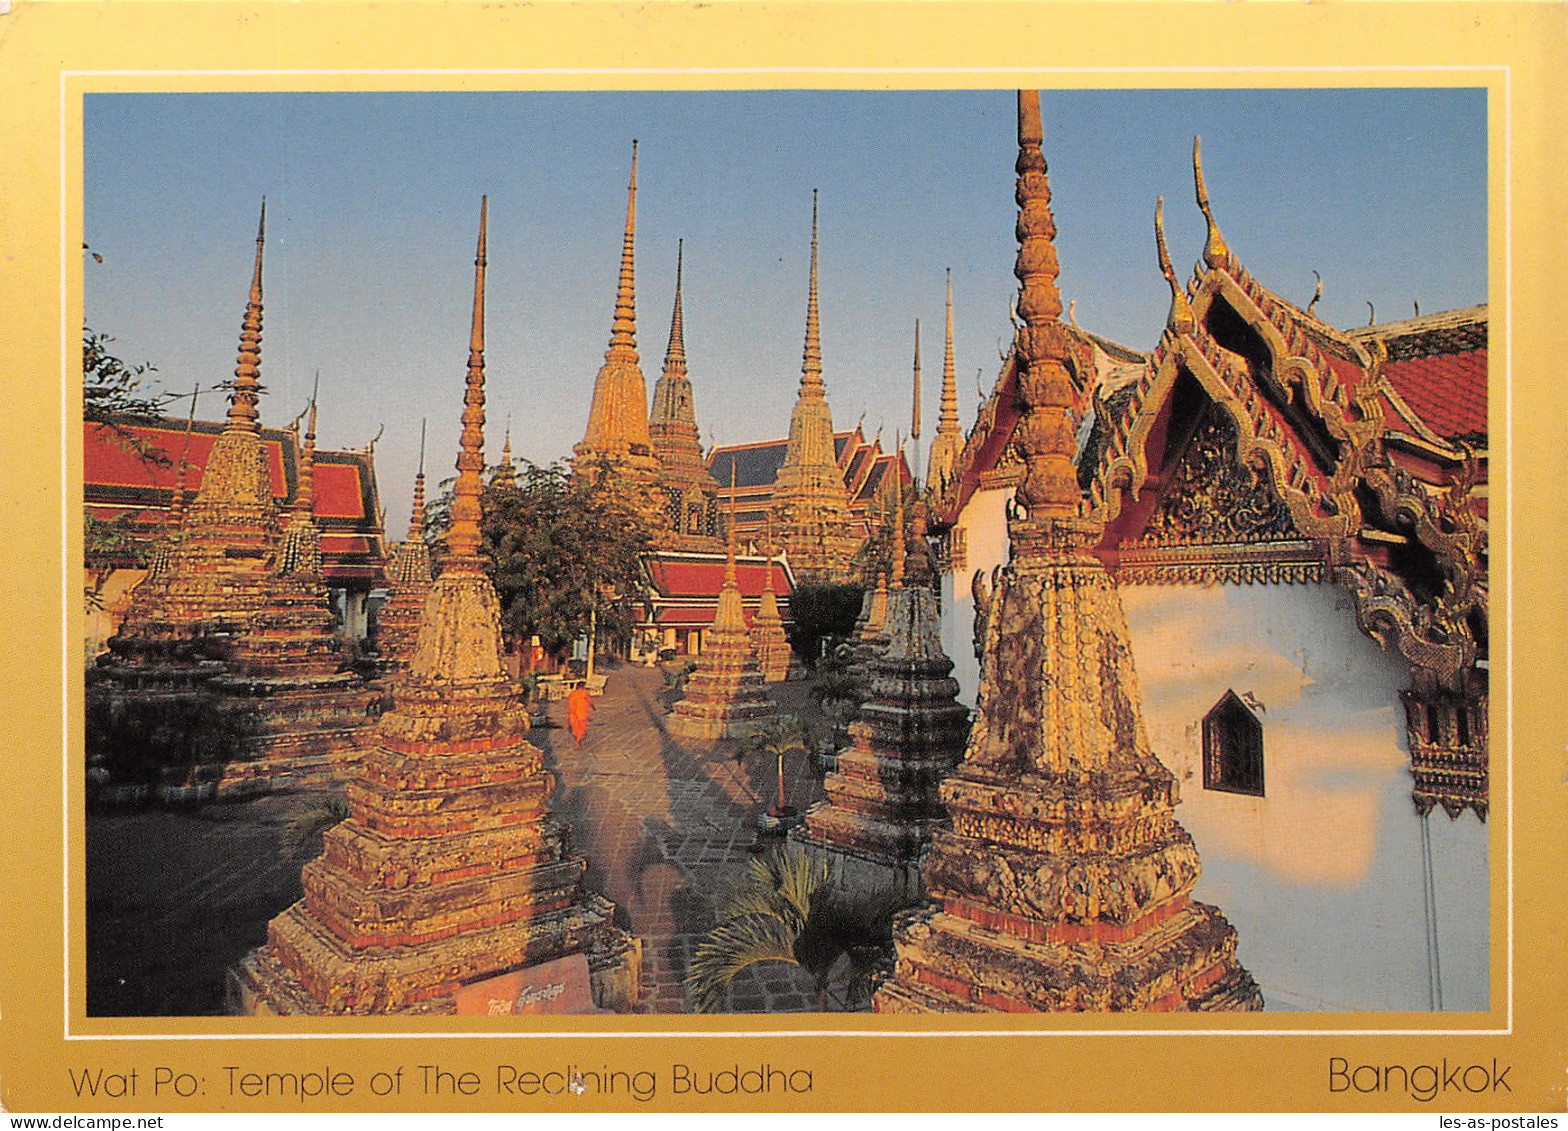 THAILAND BANGKOK - Thaïland